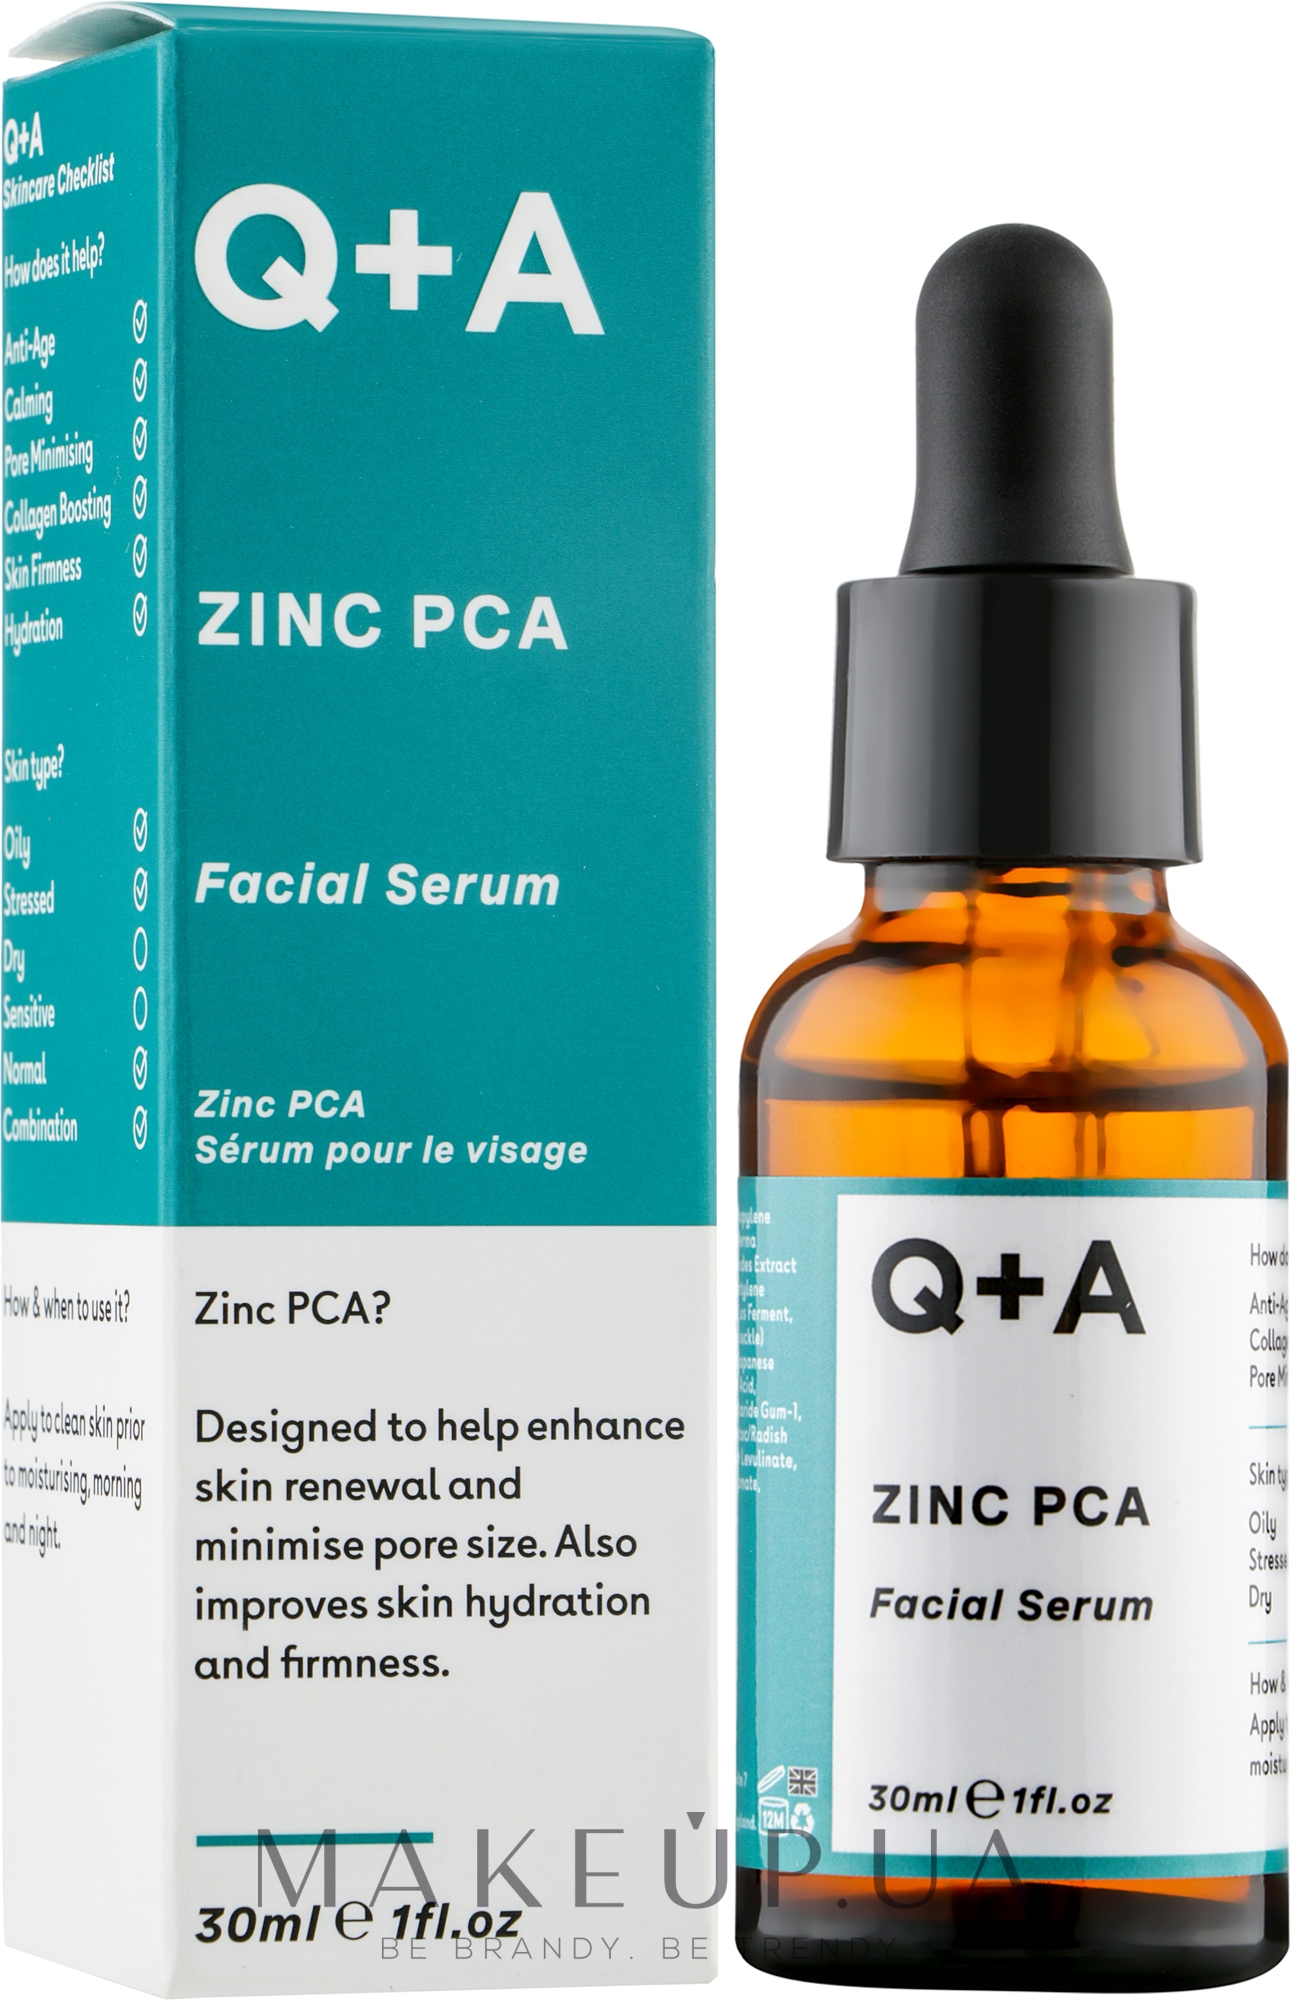 Zinc pca. Q+A Zinc PCA facial Serum". Q+A Zinc PCA крем. Сыворотка q+a. Q+A сыворотка для лица Zinc PCA 30 мл обзоры.